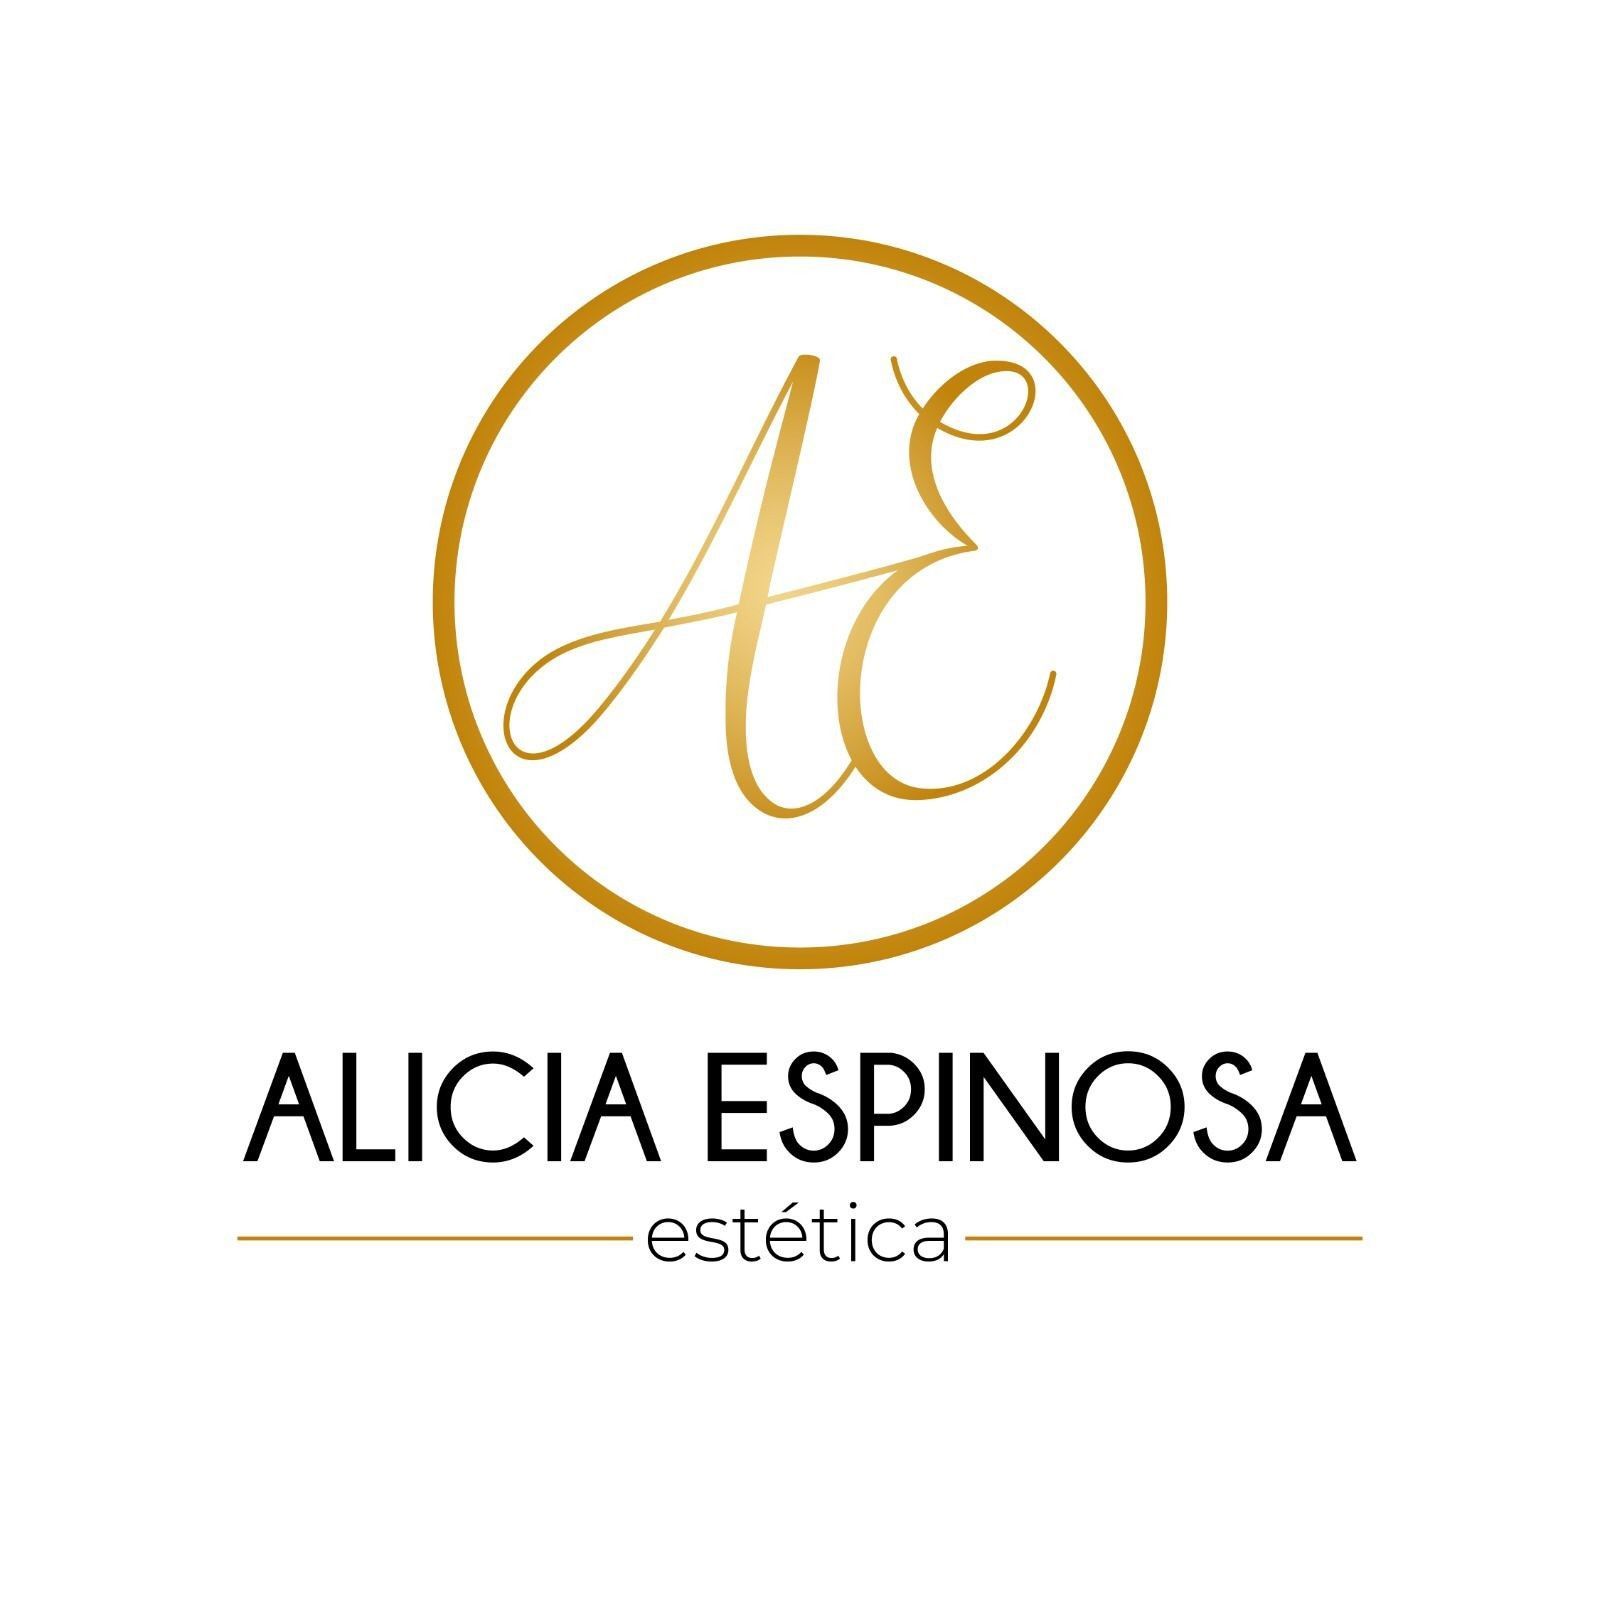 Centro de estética Alicia Espinosa, Carrer del Tibidabo, 52, 08210, Barberà del Vallès